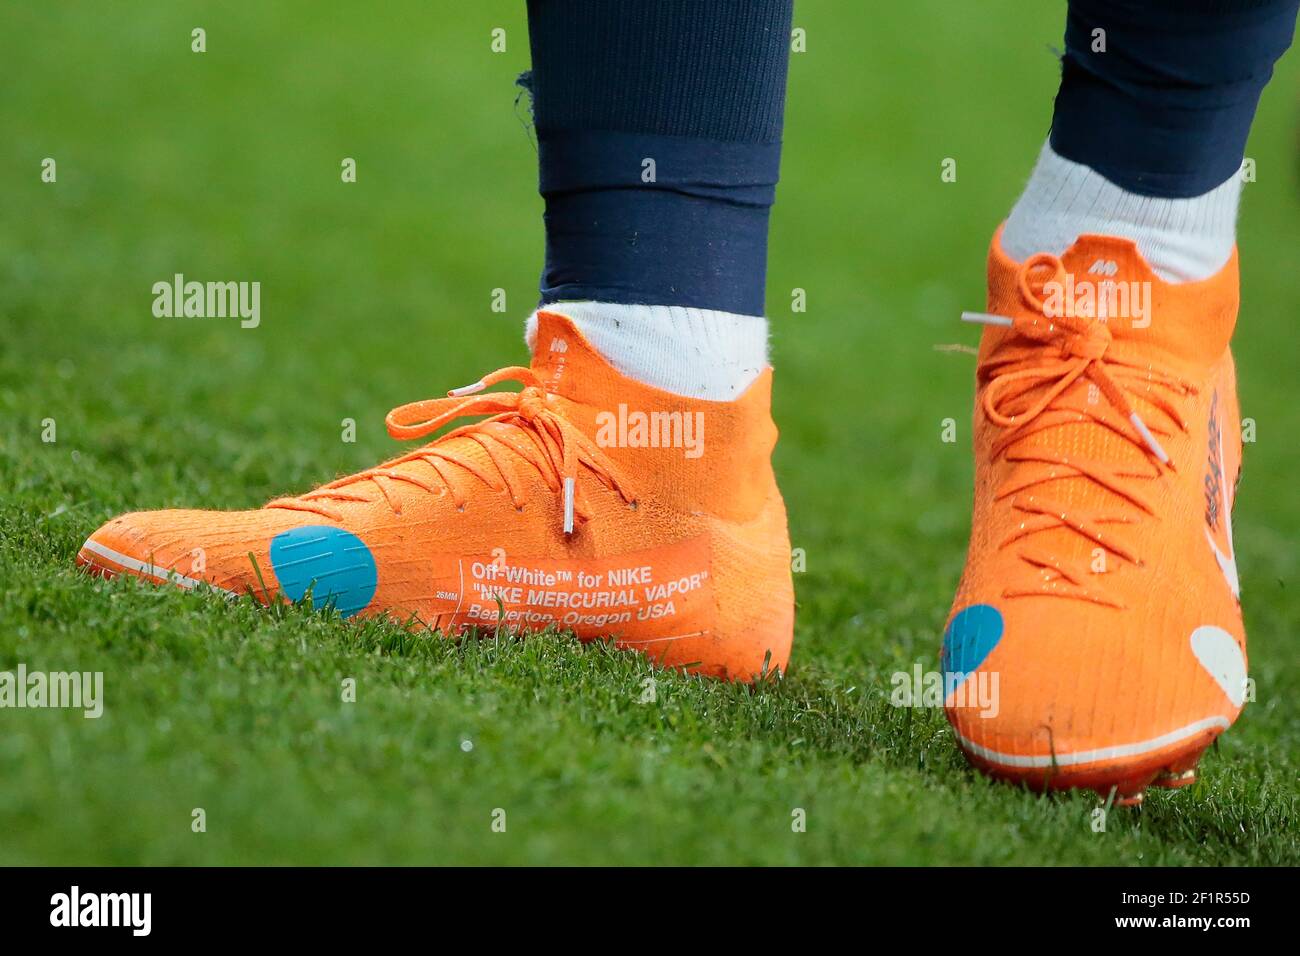 Chaussures de Kylian Mbappe (PSG), Off-White ™ pour NIKE « Nike Mercurial  Vapore » Beaverton, Oregon États-Unis c. 2018 'KNIT', lors du match de  football L1 du championnat français entre Paris Saint-Germain (